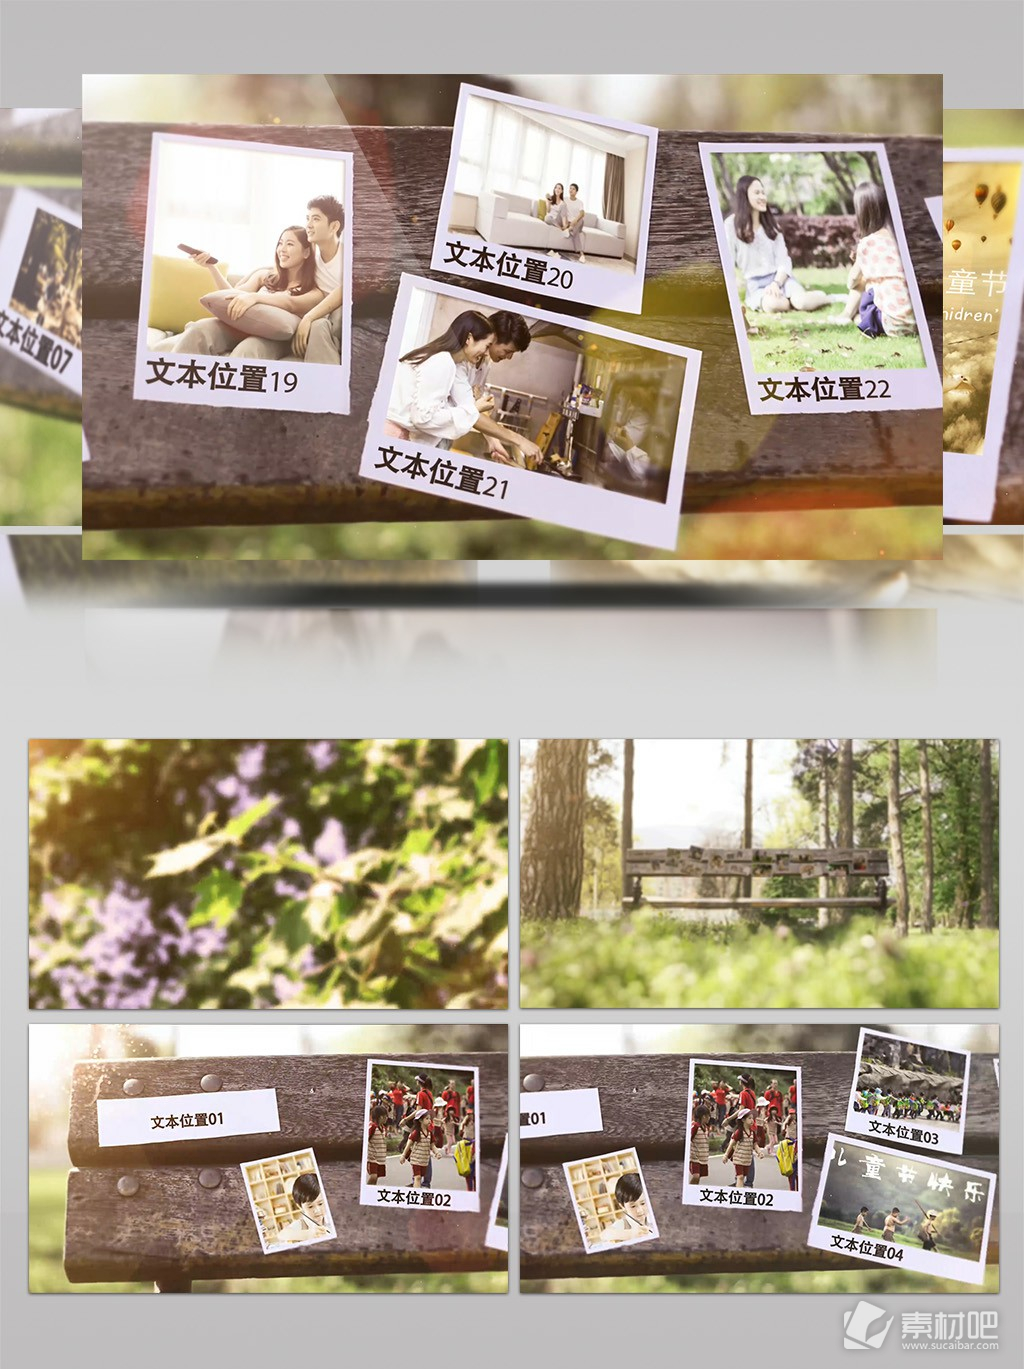 实拍清新自然森林公园展示家庭照片模板